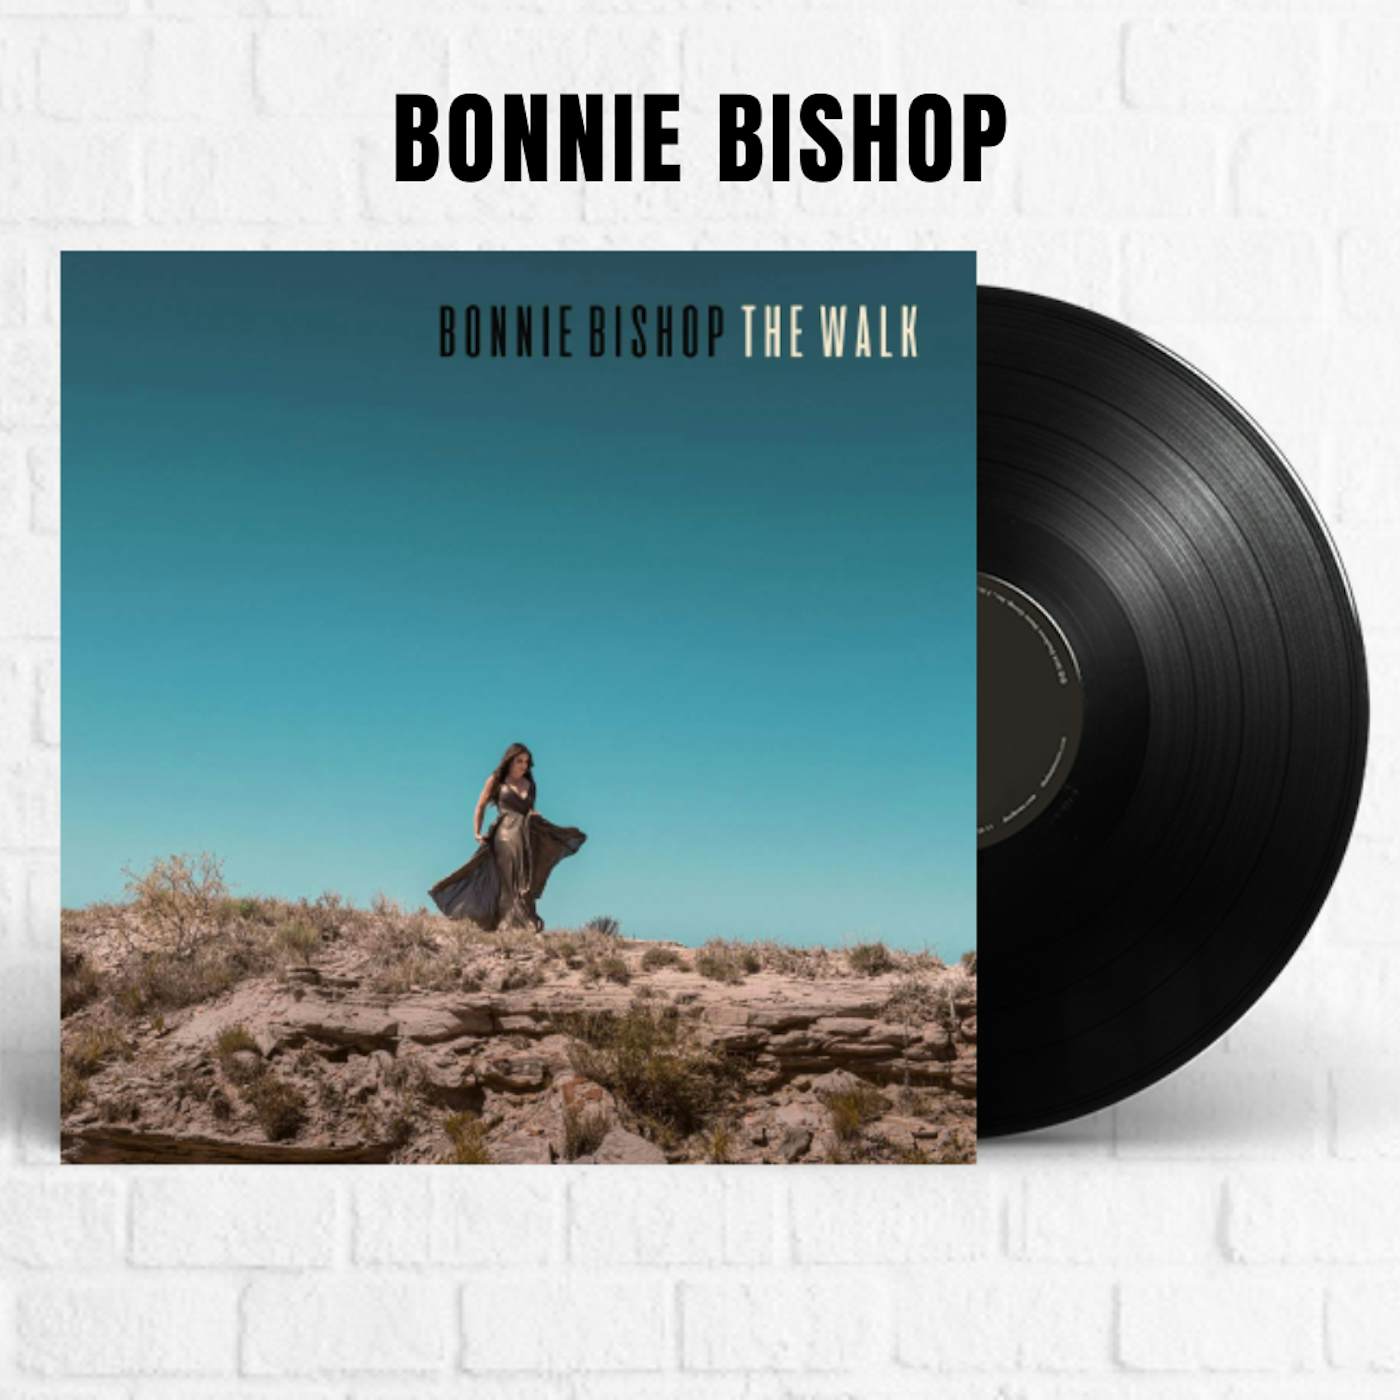 Bonnie Bishop The Walk